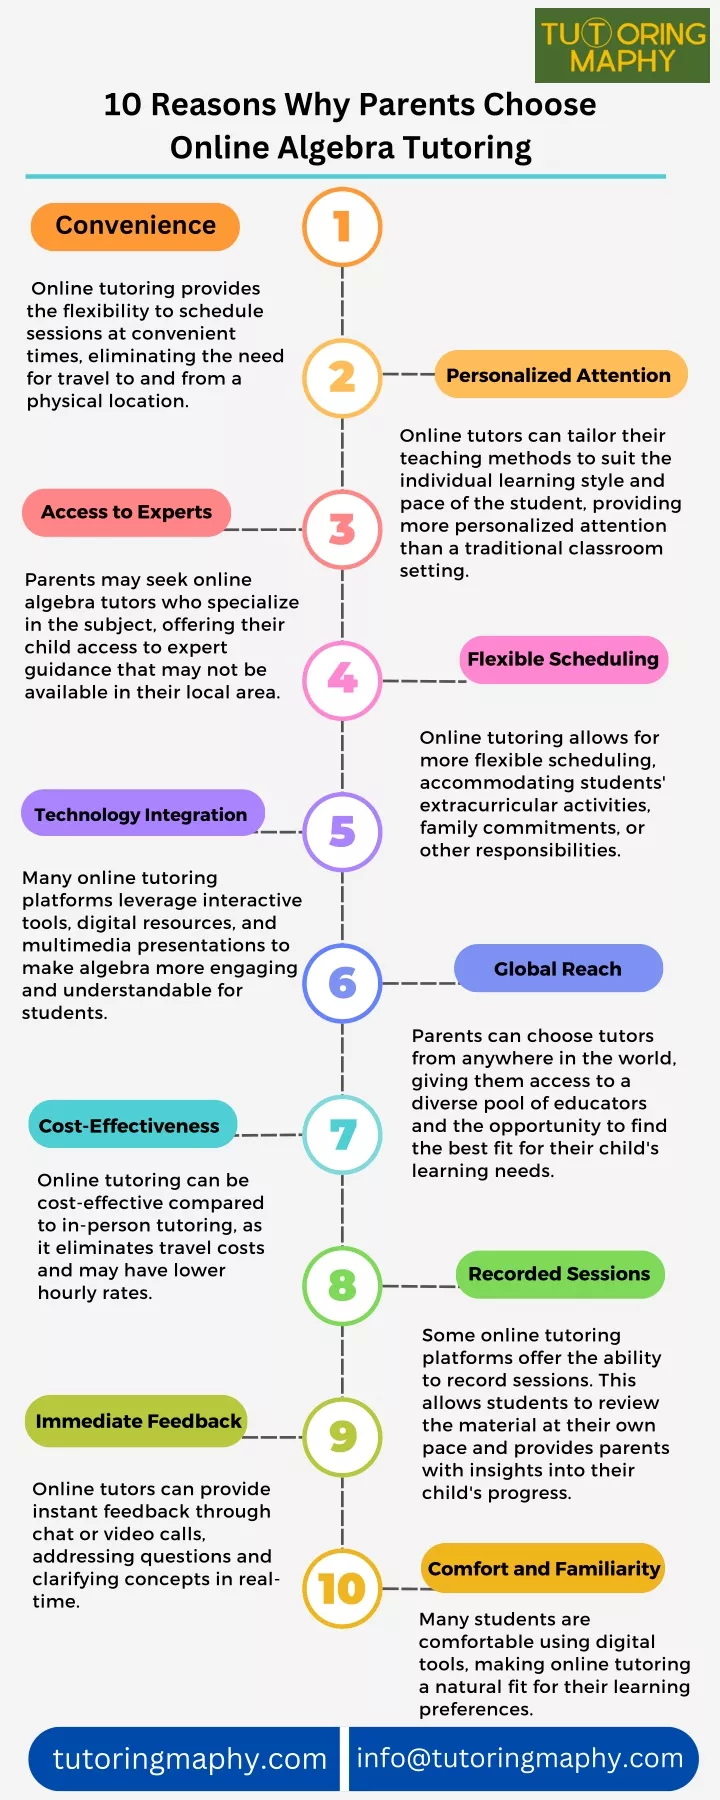 10 reasons why parents choose online algebra